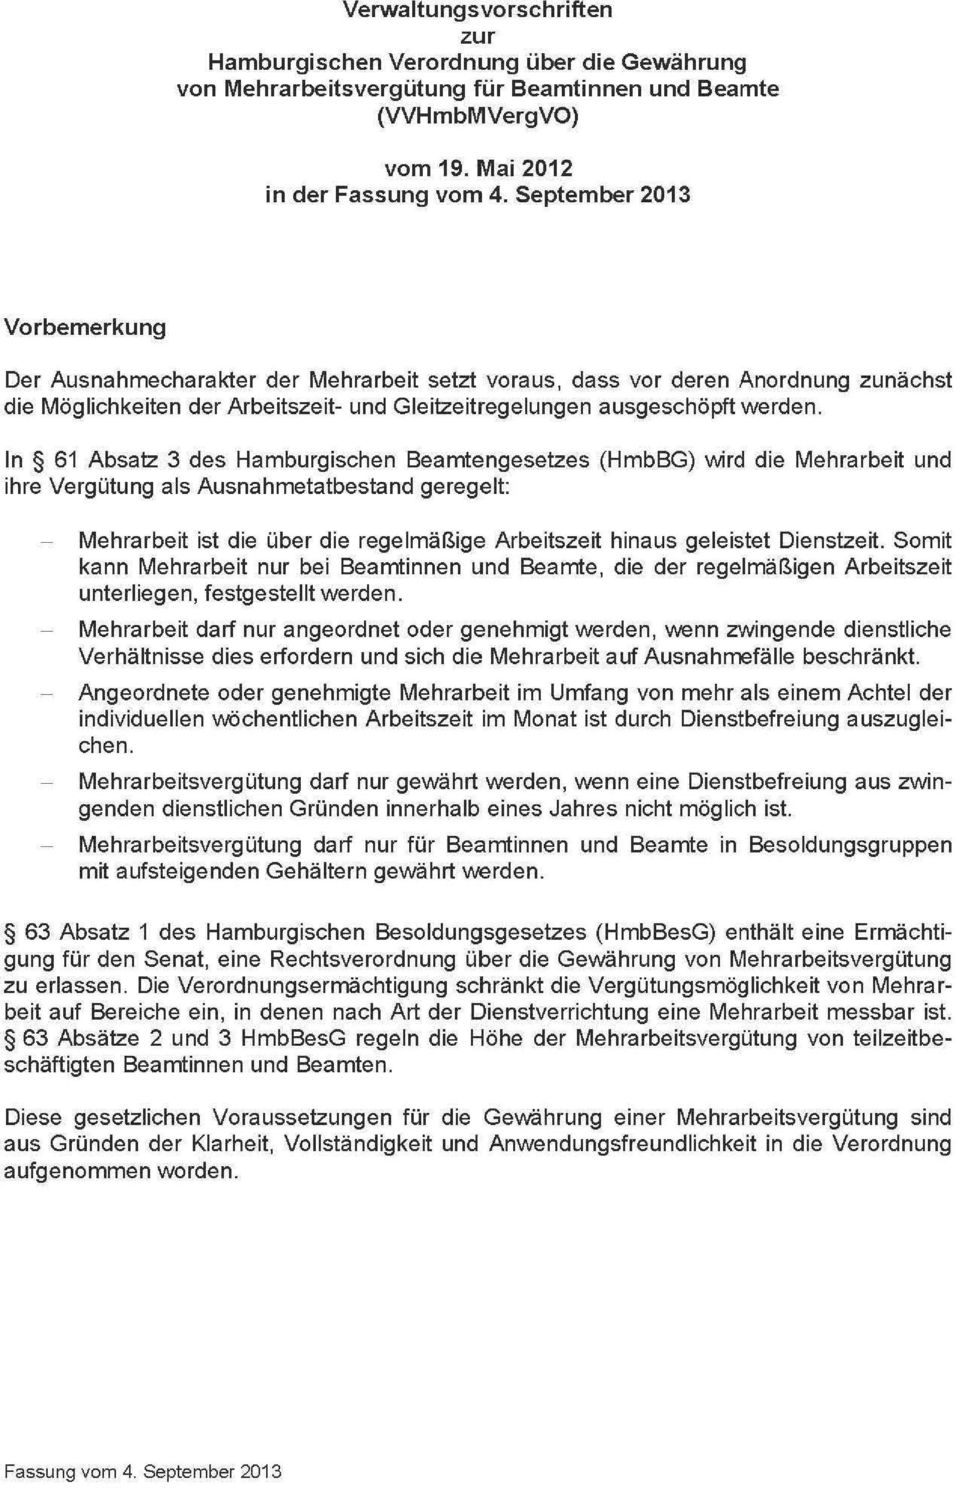 In 61 Absatz 3 des Hamburgischen Beamtengesetzes (HmbBG) wird die Mehrarbeit und ihre Vergütung als Ausnahmetatbestand geregelt: Mehrarbeit ist die über die regelmäßige Arbeitszeit hinaus geleistet